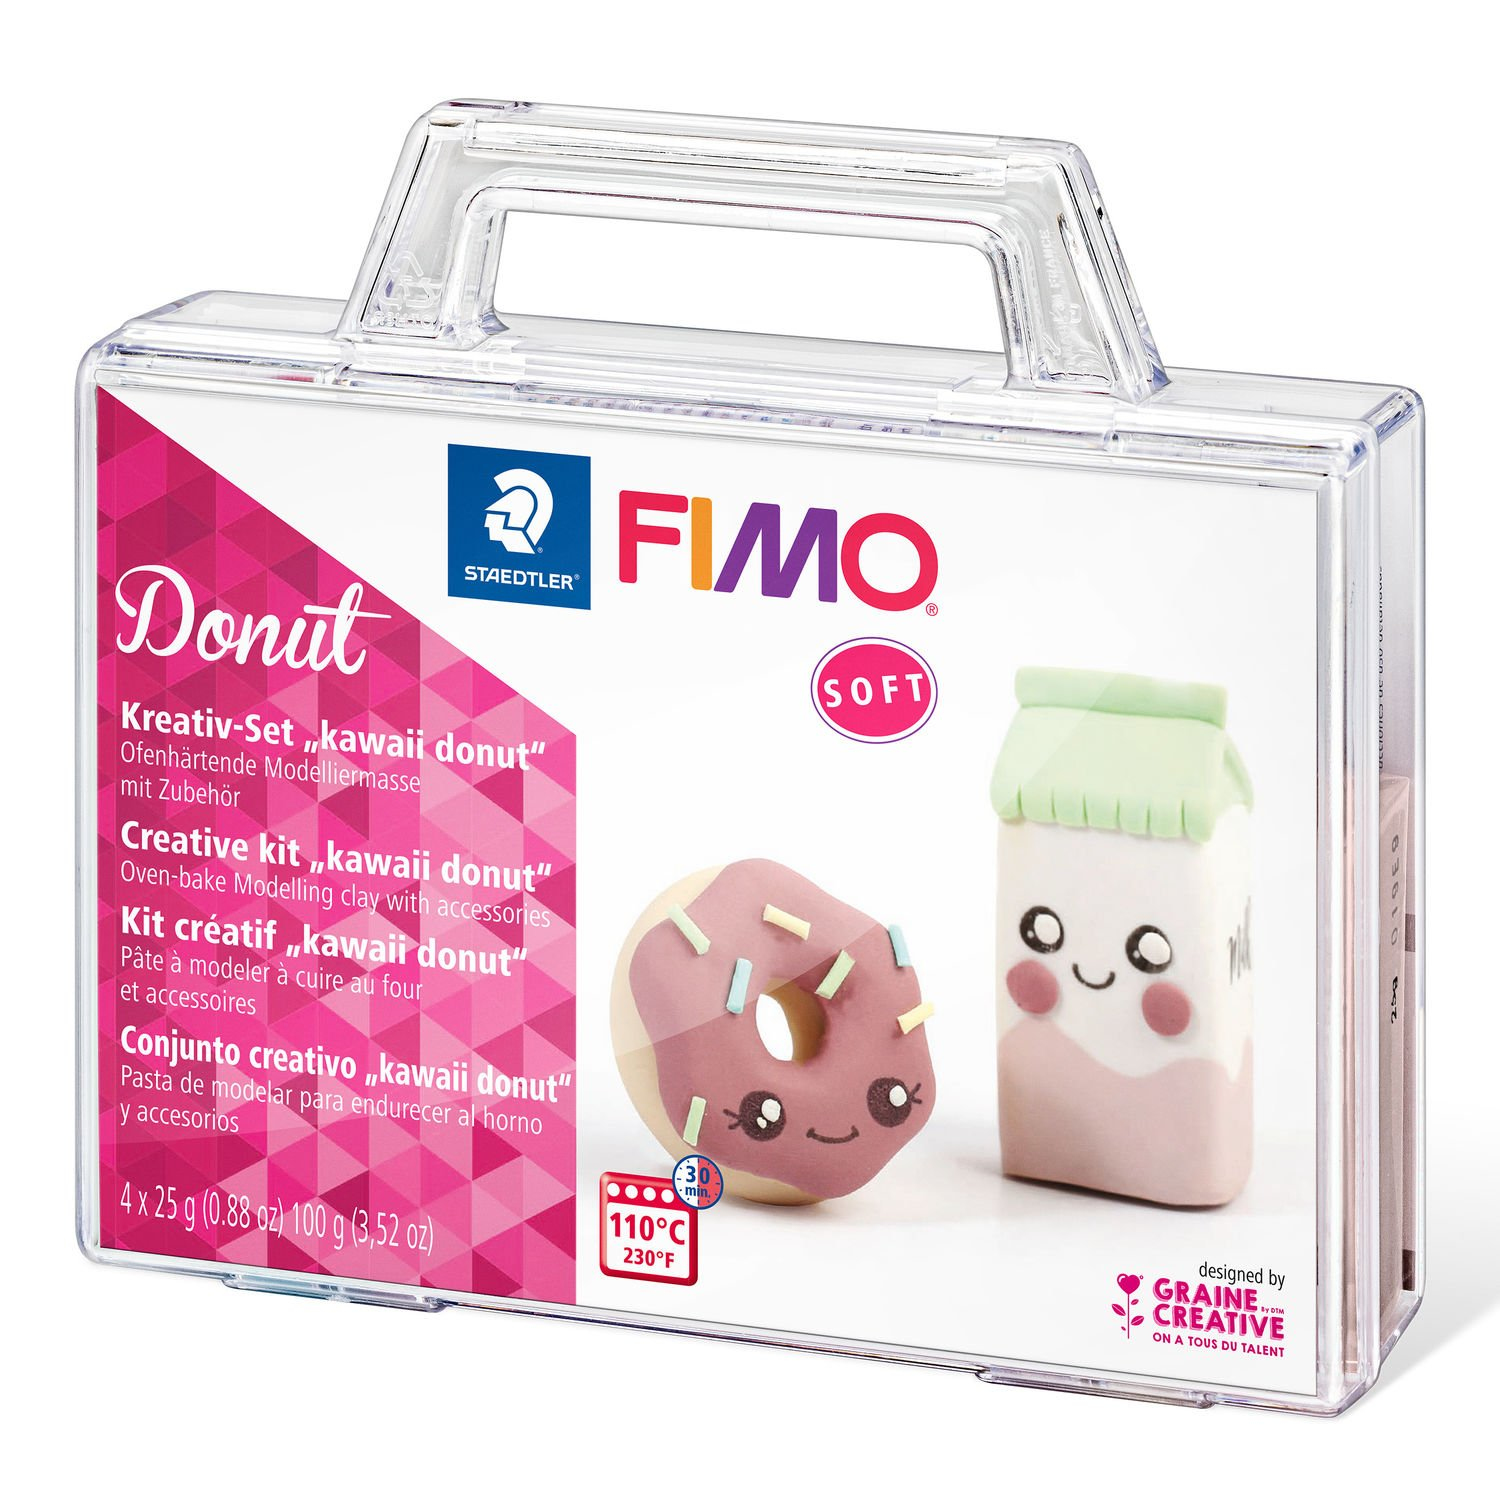 STAEDTLER FIMO Donut - Knetmasse - Mintfarbe - Rose - Vanillefarbe - Weiß - Erwachsene - 4 Stück(e) - 4 Farben - 110 °C